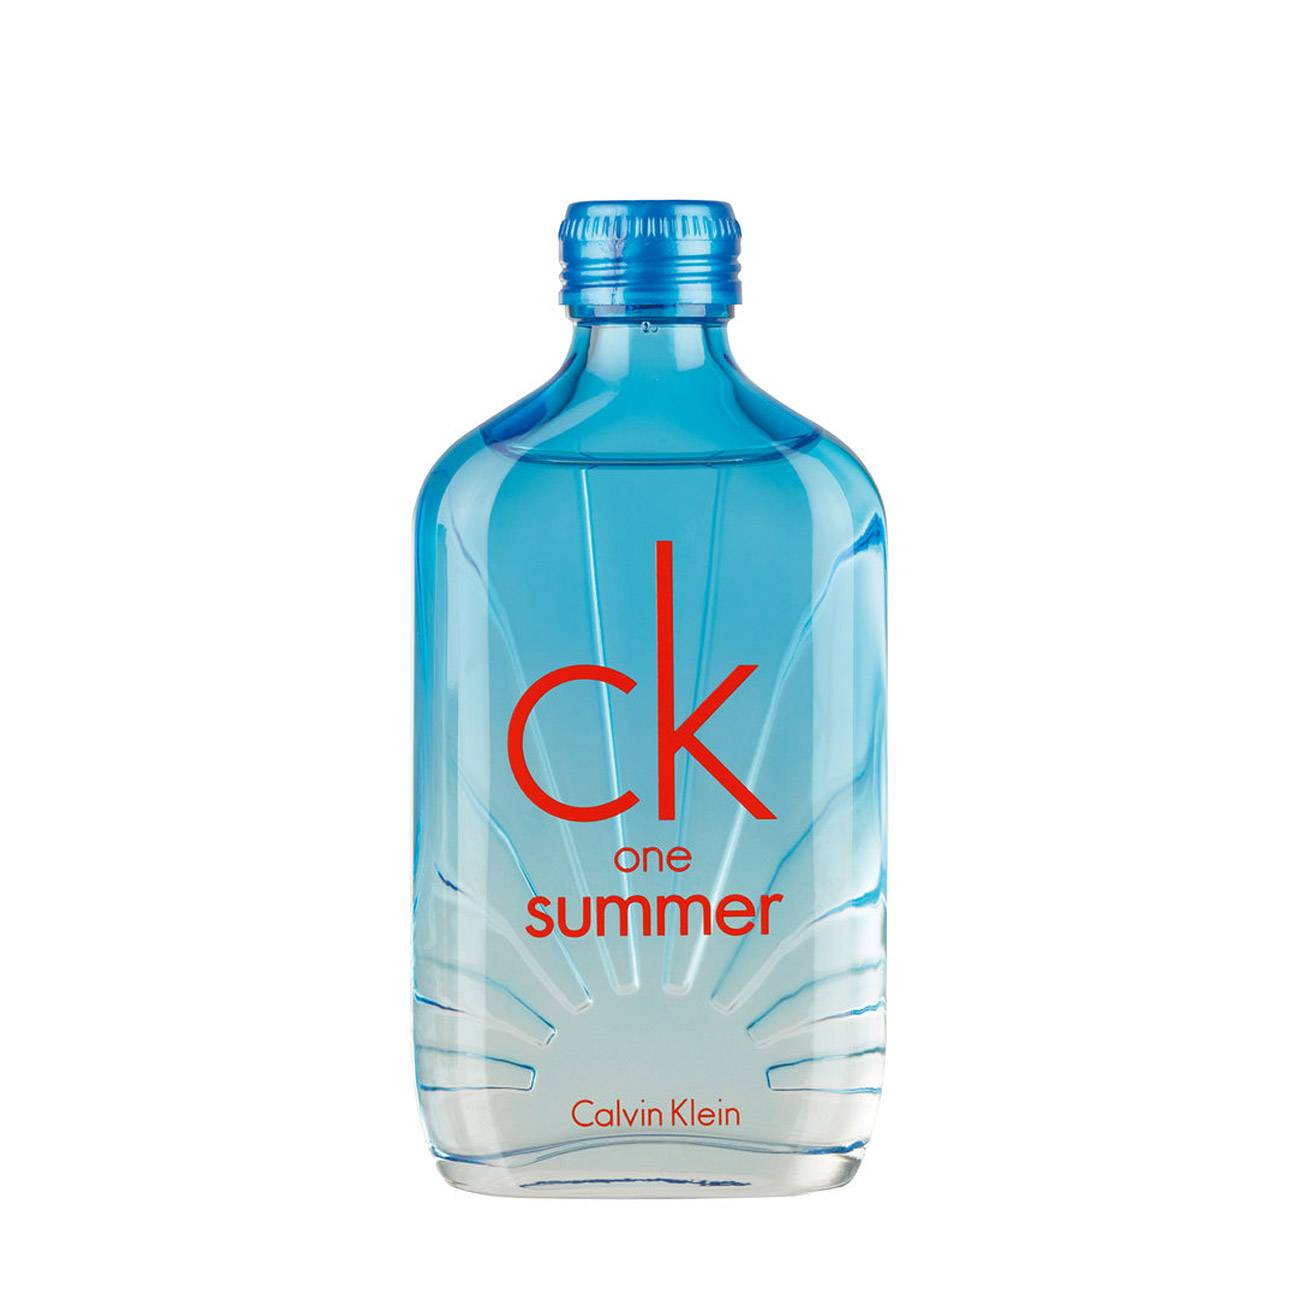 CK ONE SUMMER 100ml original Calvin Klein bestvalue